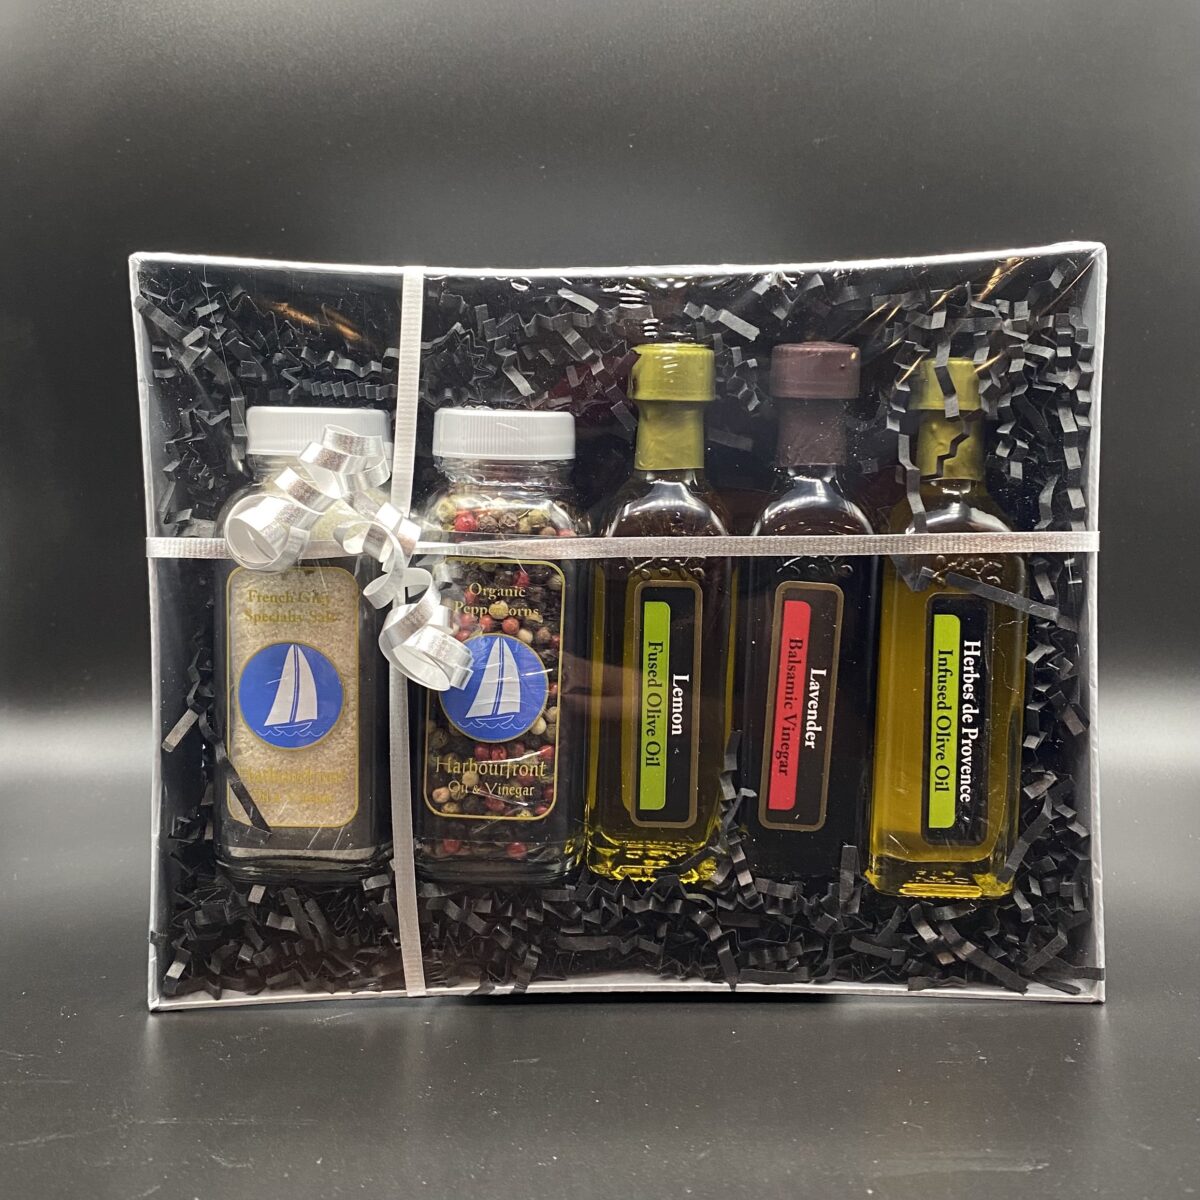 Oil and Vinegar, Salt and Pepper Gift Box